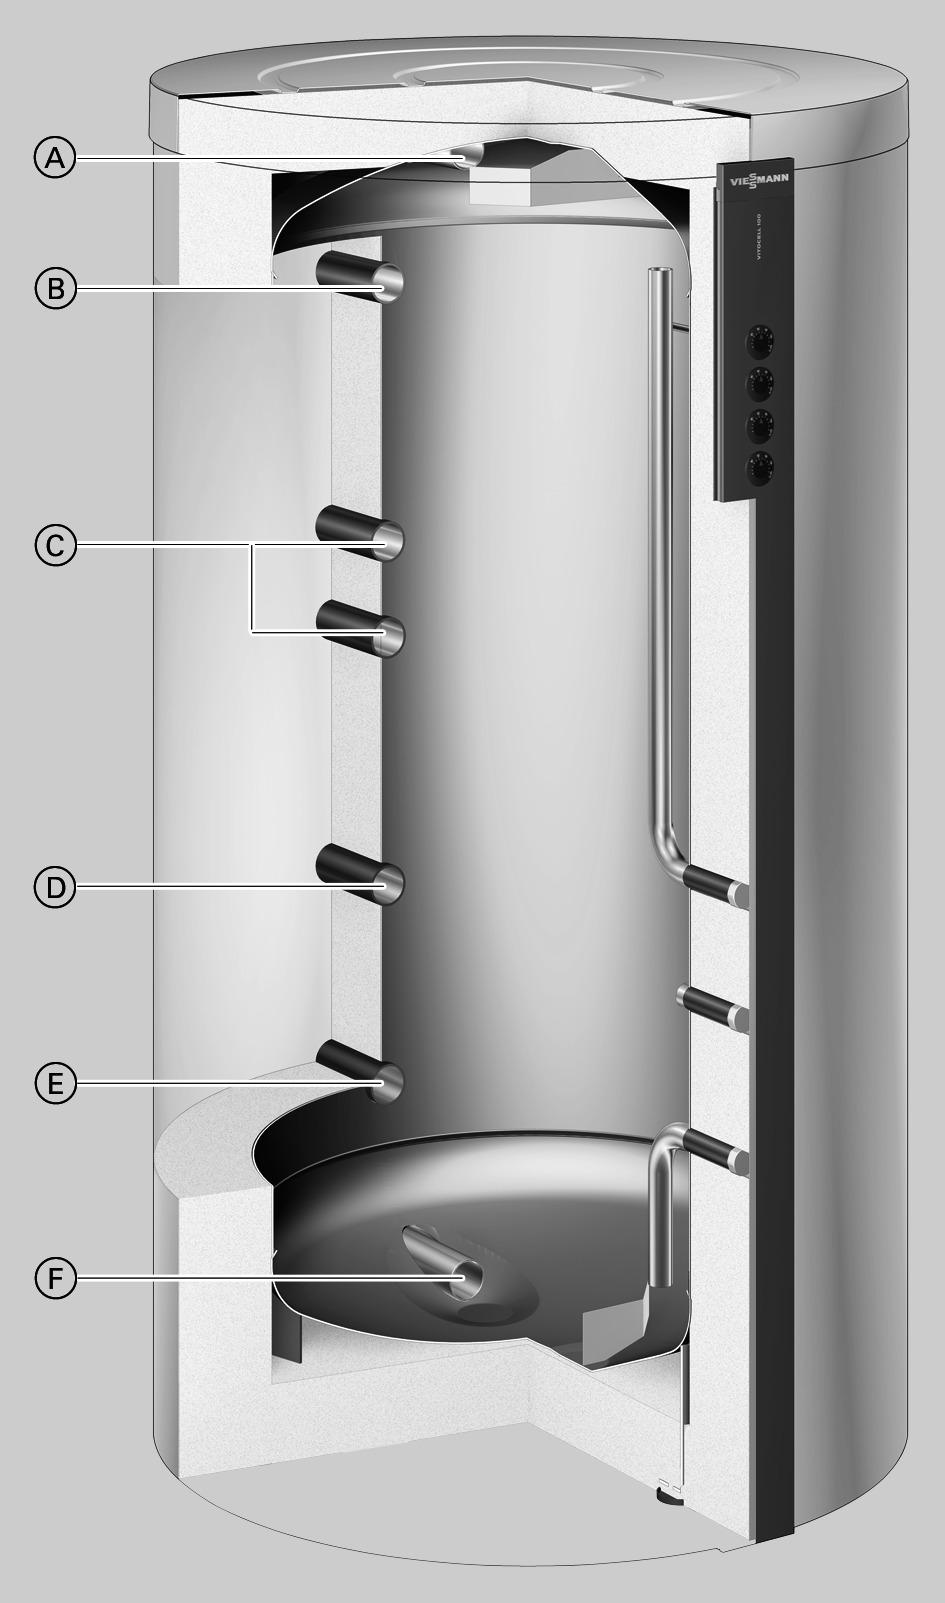 Vitocell 100-E De voordelen op een rij Veelzijdig te geruiken in verwarmingssystemen met meerdere warmtegeneratoren en warmteverruikers door meerdere aanvoer- en retouraansluitingen evenals extra